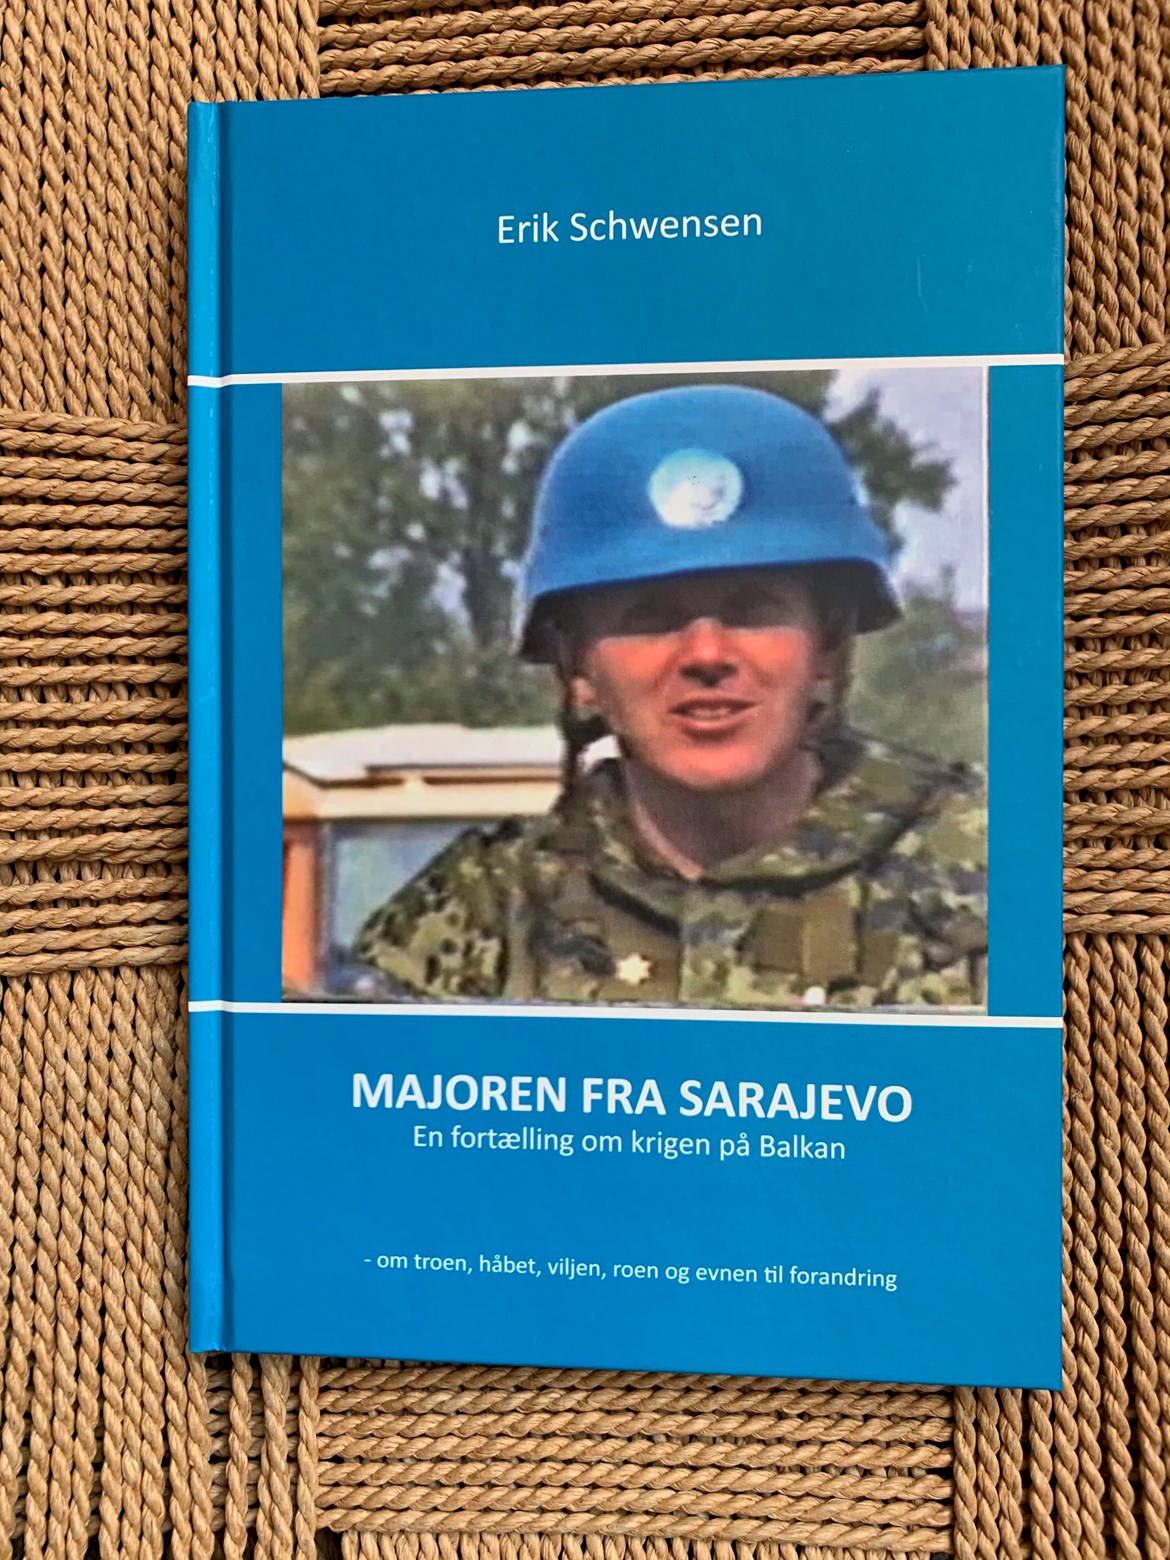 Majoren fra Sarajevo - af Erik Schwensen. En fortælling om krigen på Balkan